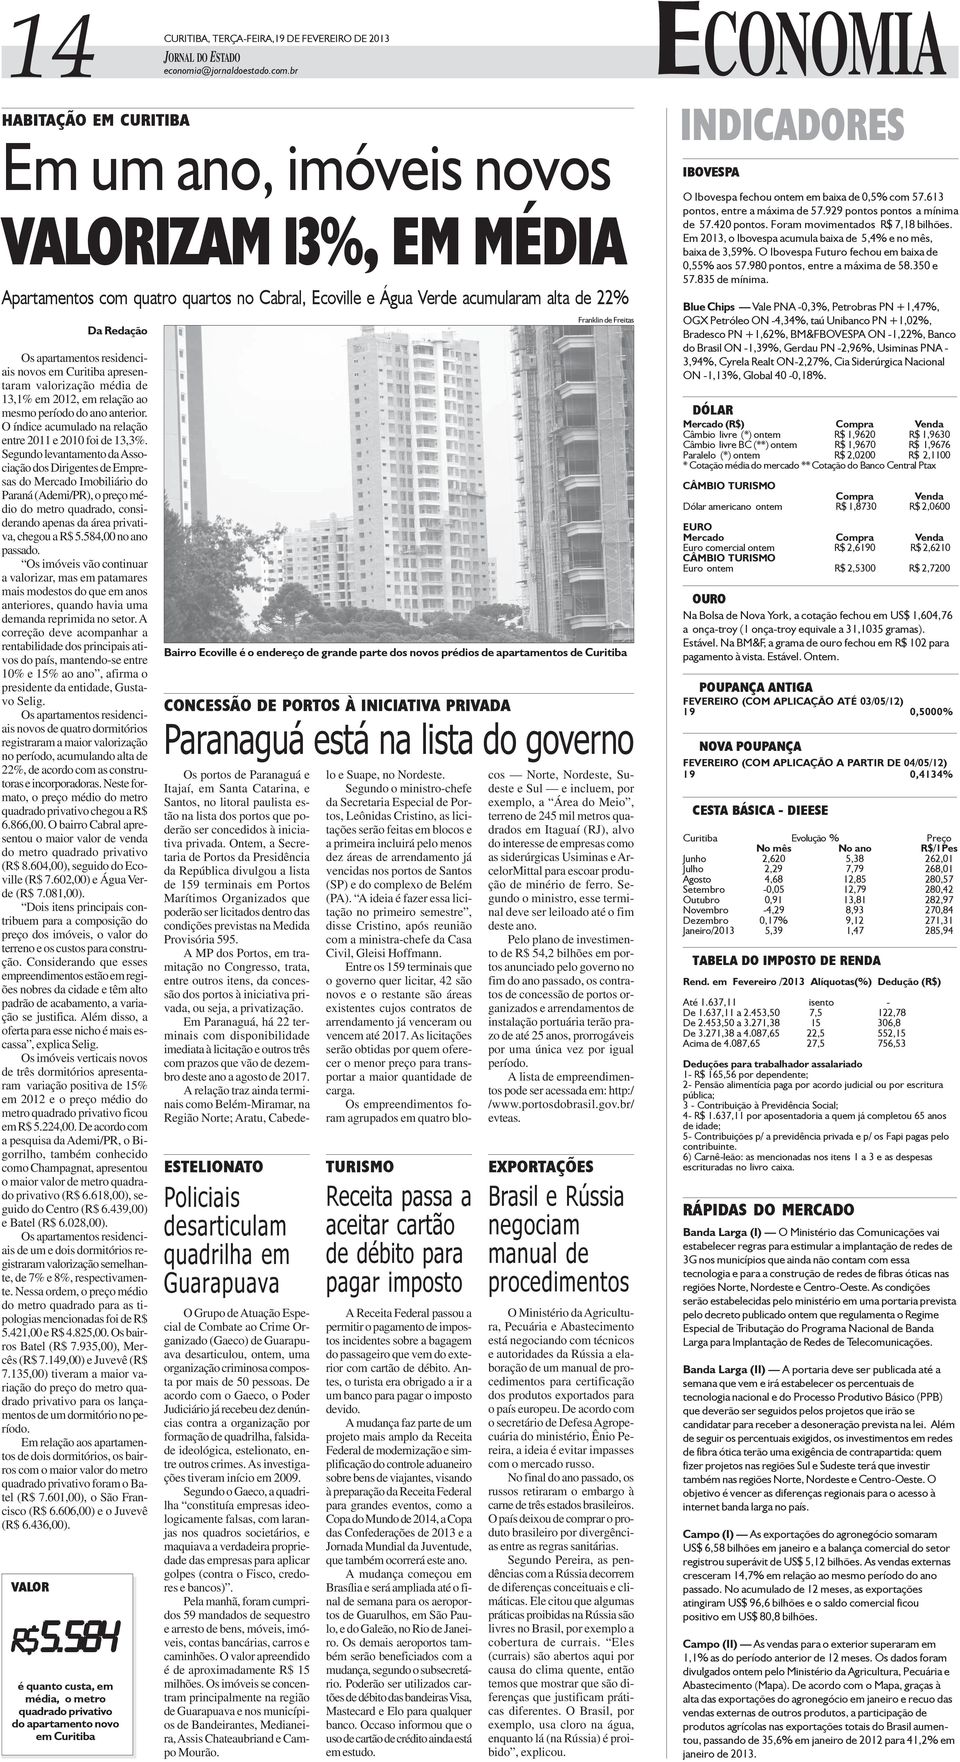 residenciais novos em Curitiba apresentaram valorização média de 13,1% em 2012, em relação ao mesmo período do ano anterior. O índice acumulado na relação entre 2011 e 2010 foi de 13,3%.